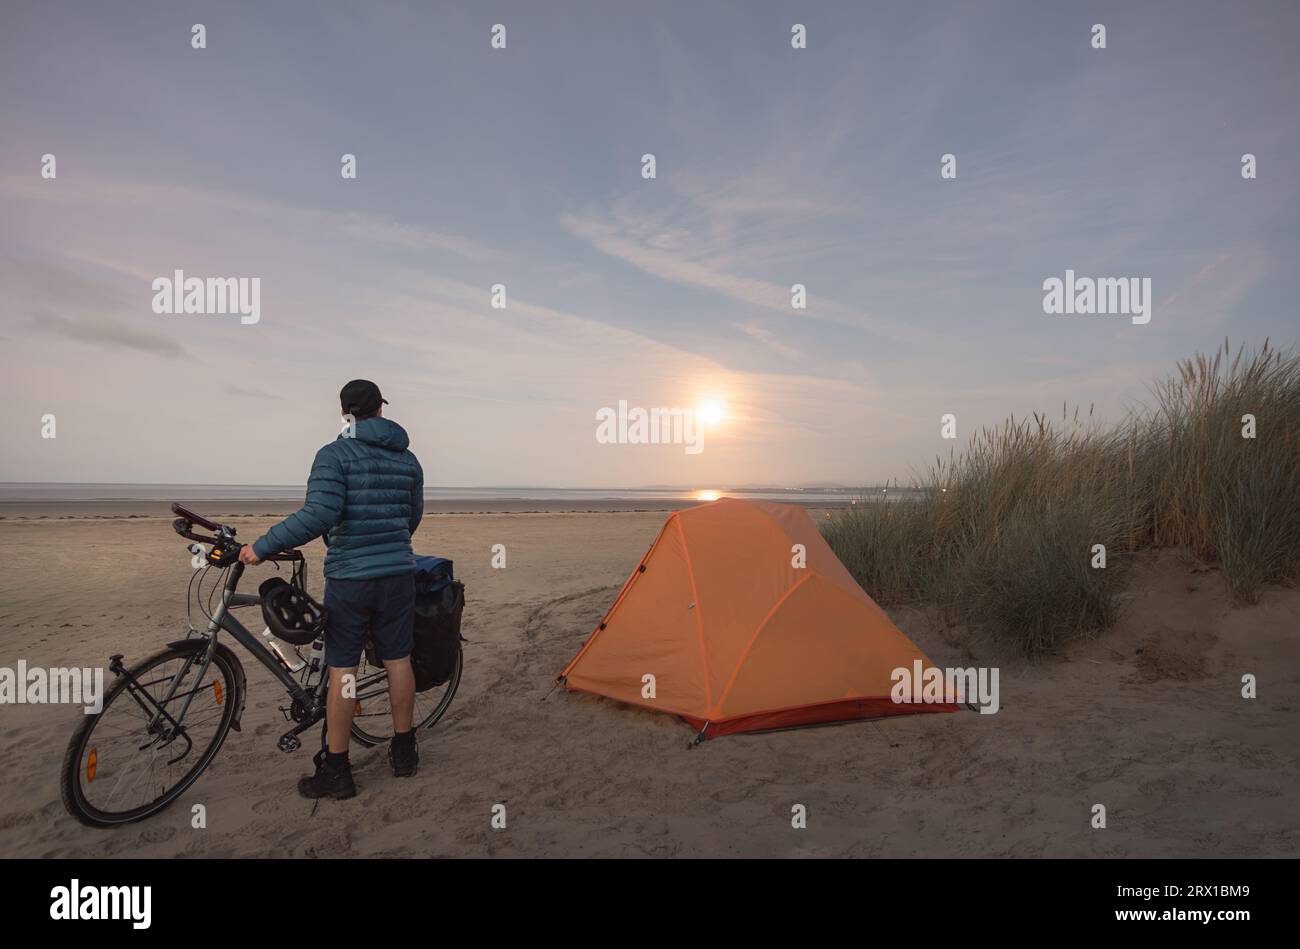 homme avec vélo de randonnée camping sur la plage sous la pleine lune Banque D'Images